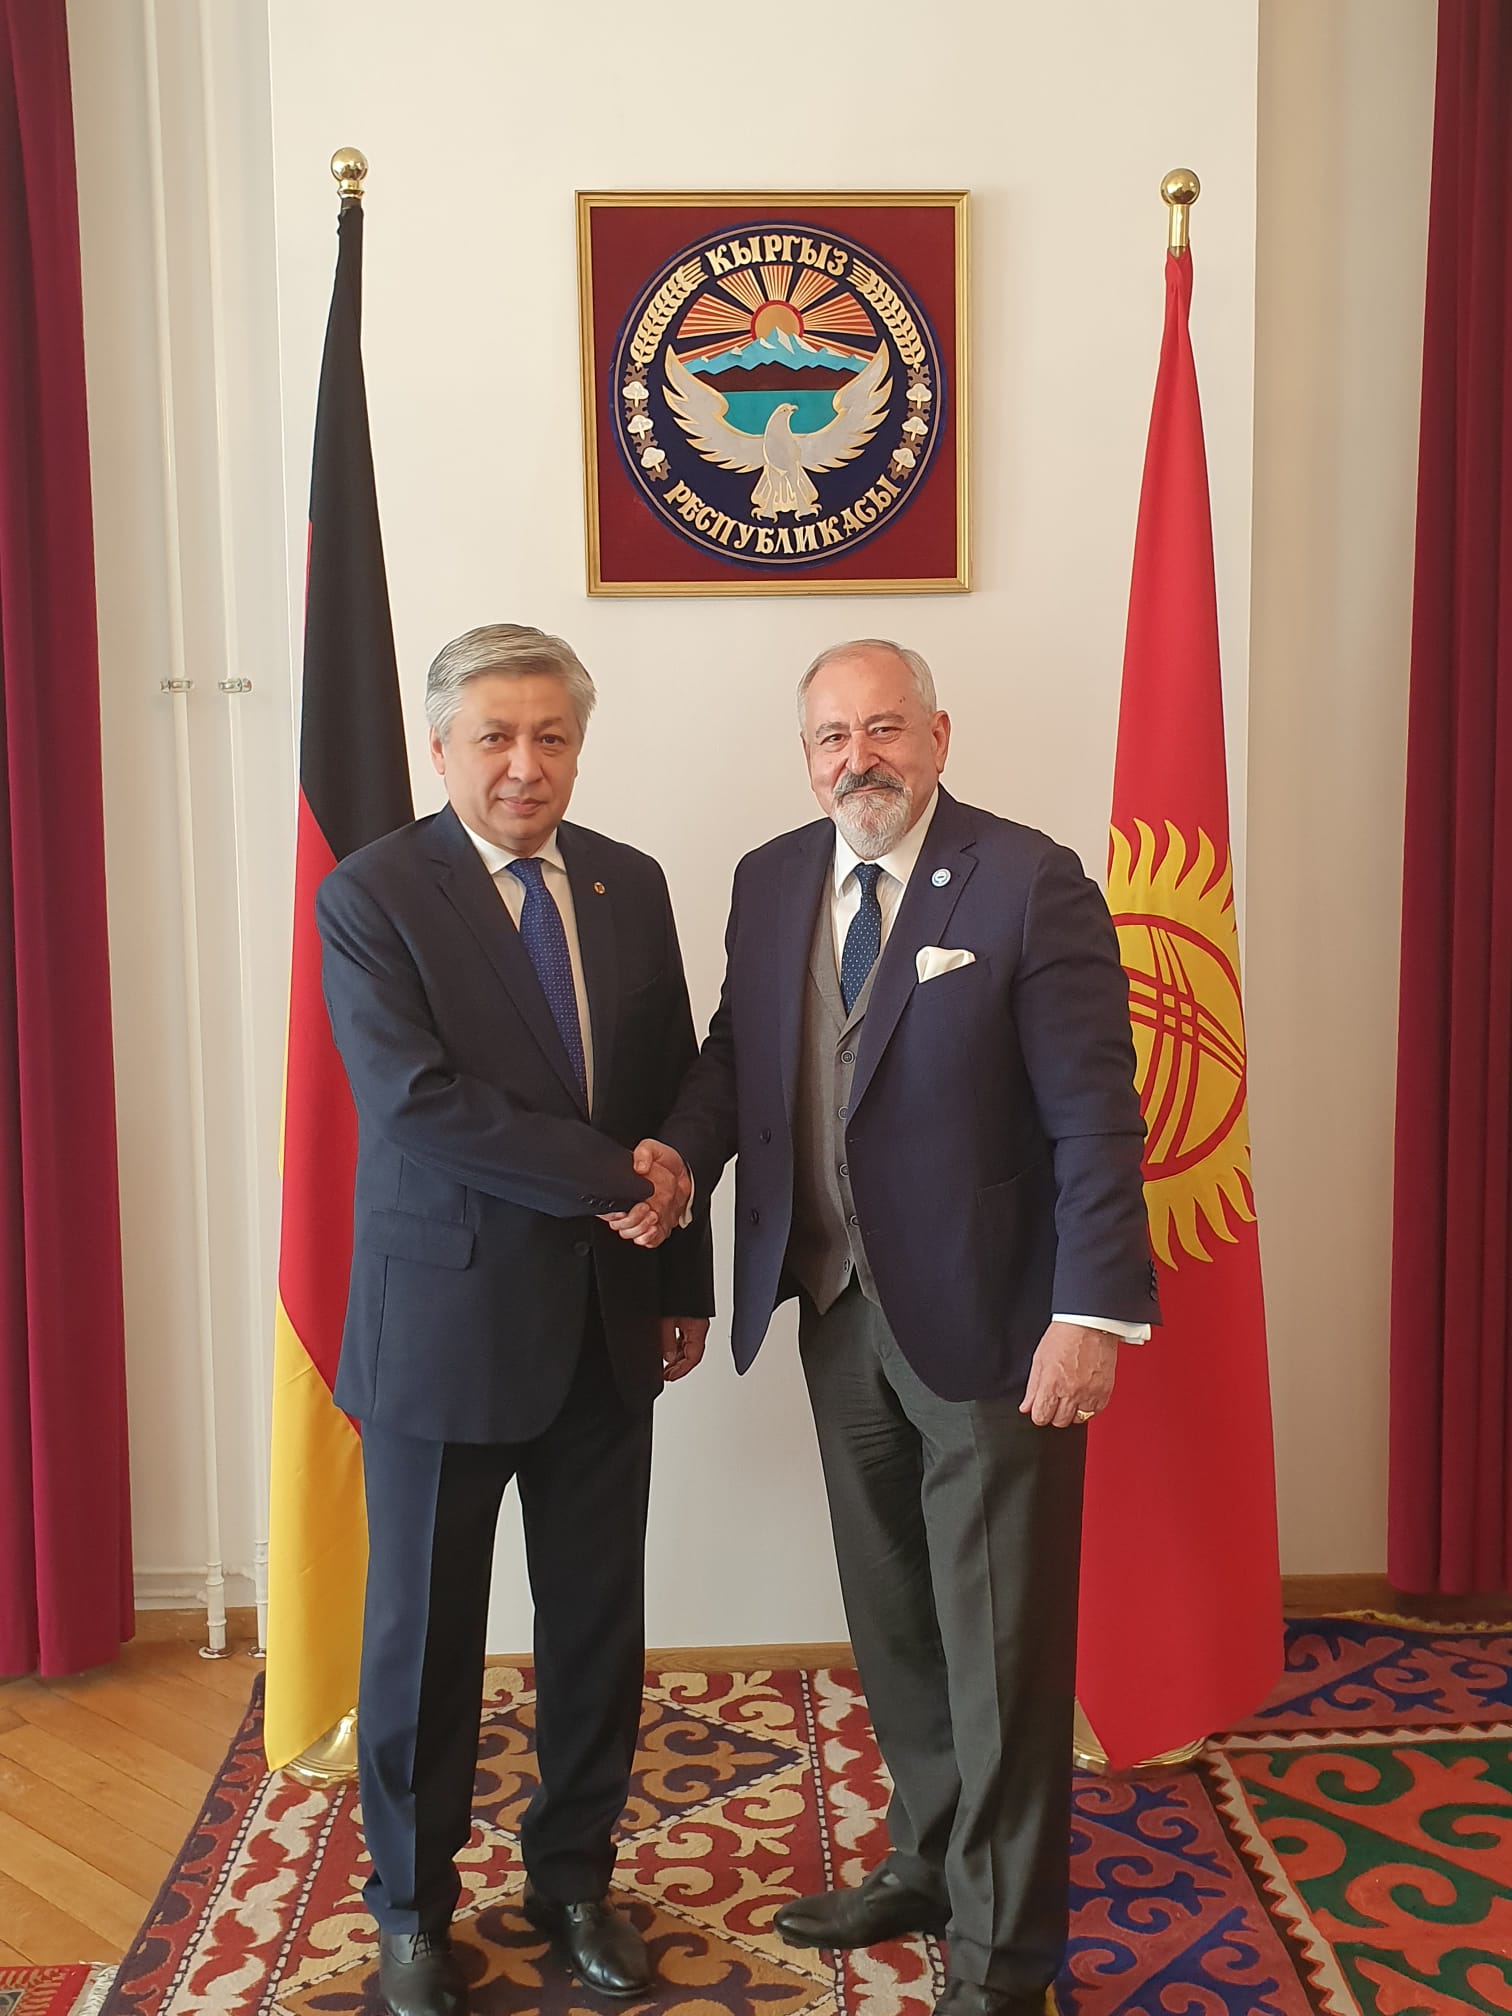 Jego Ekscelencja Ambasador Republiki Kirgiskiej w Niemczech Erlan Abdyldaev. Wieloletni Minister Spraw Zagranicznych.